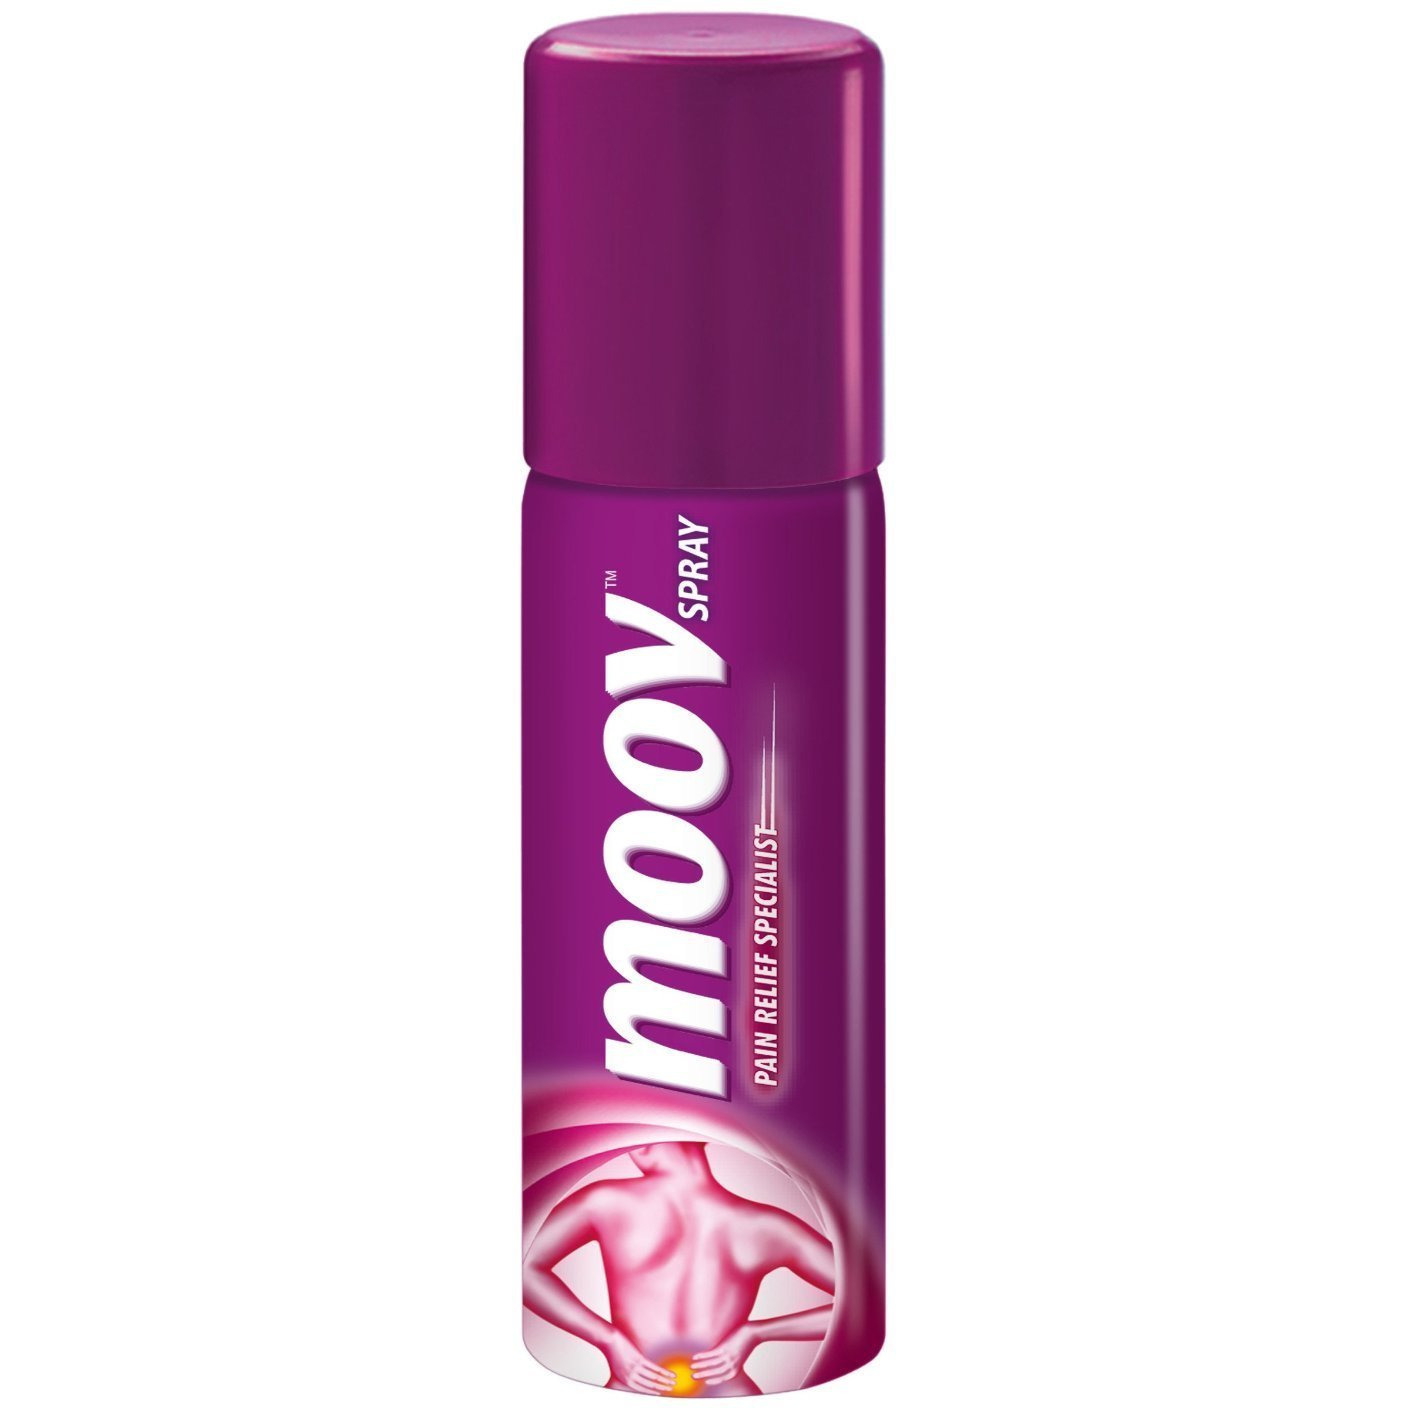 Moov Spray - 80 grms (Pack of 3)